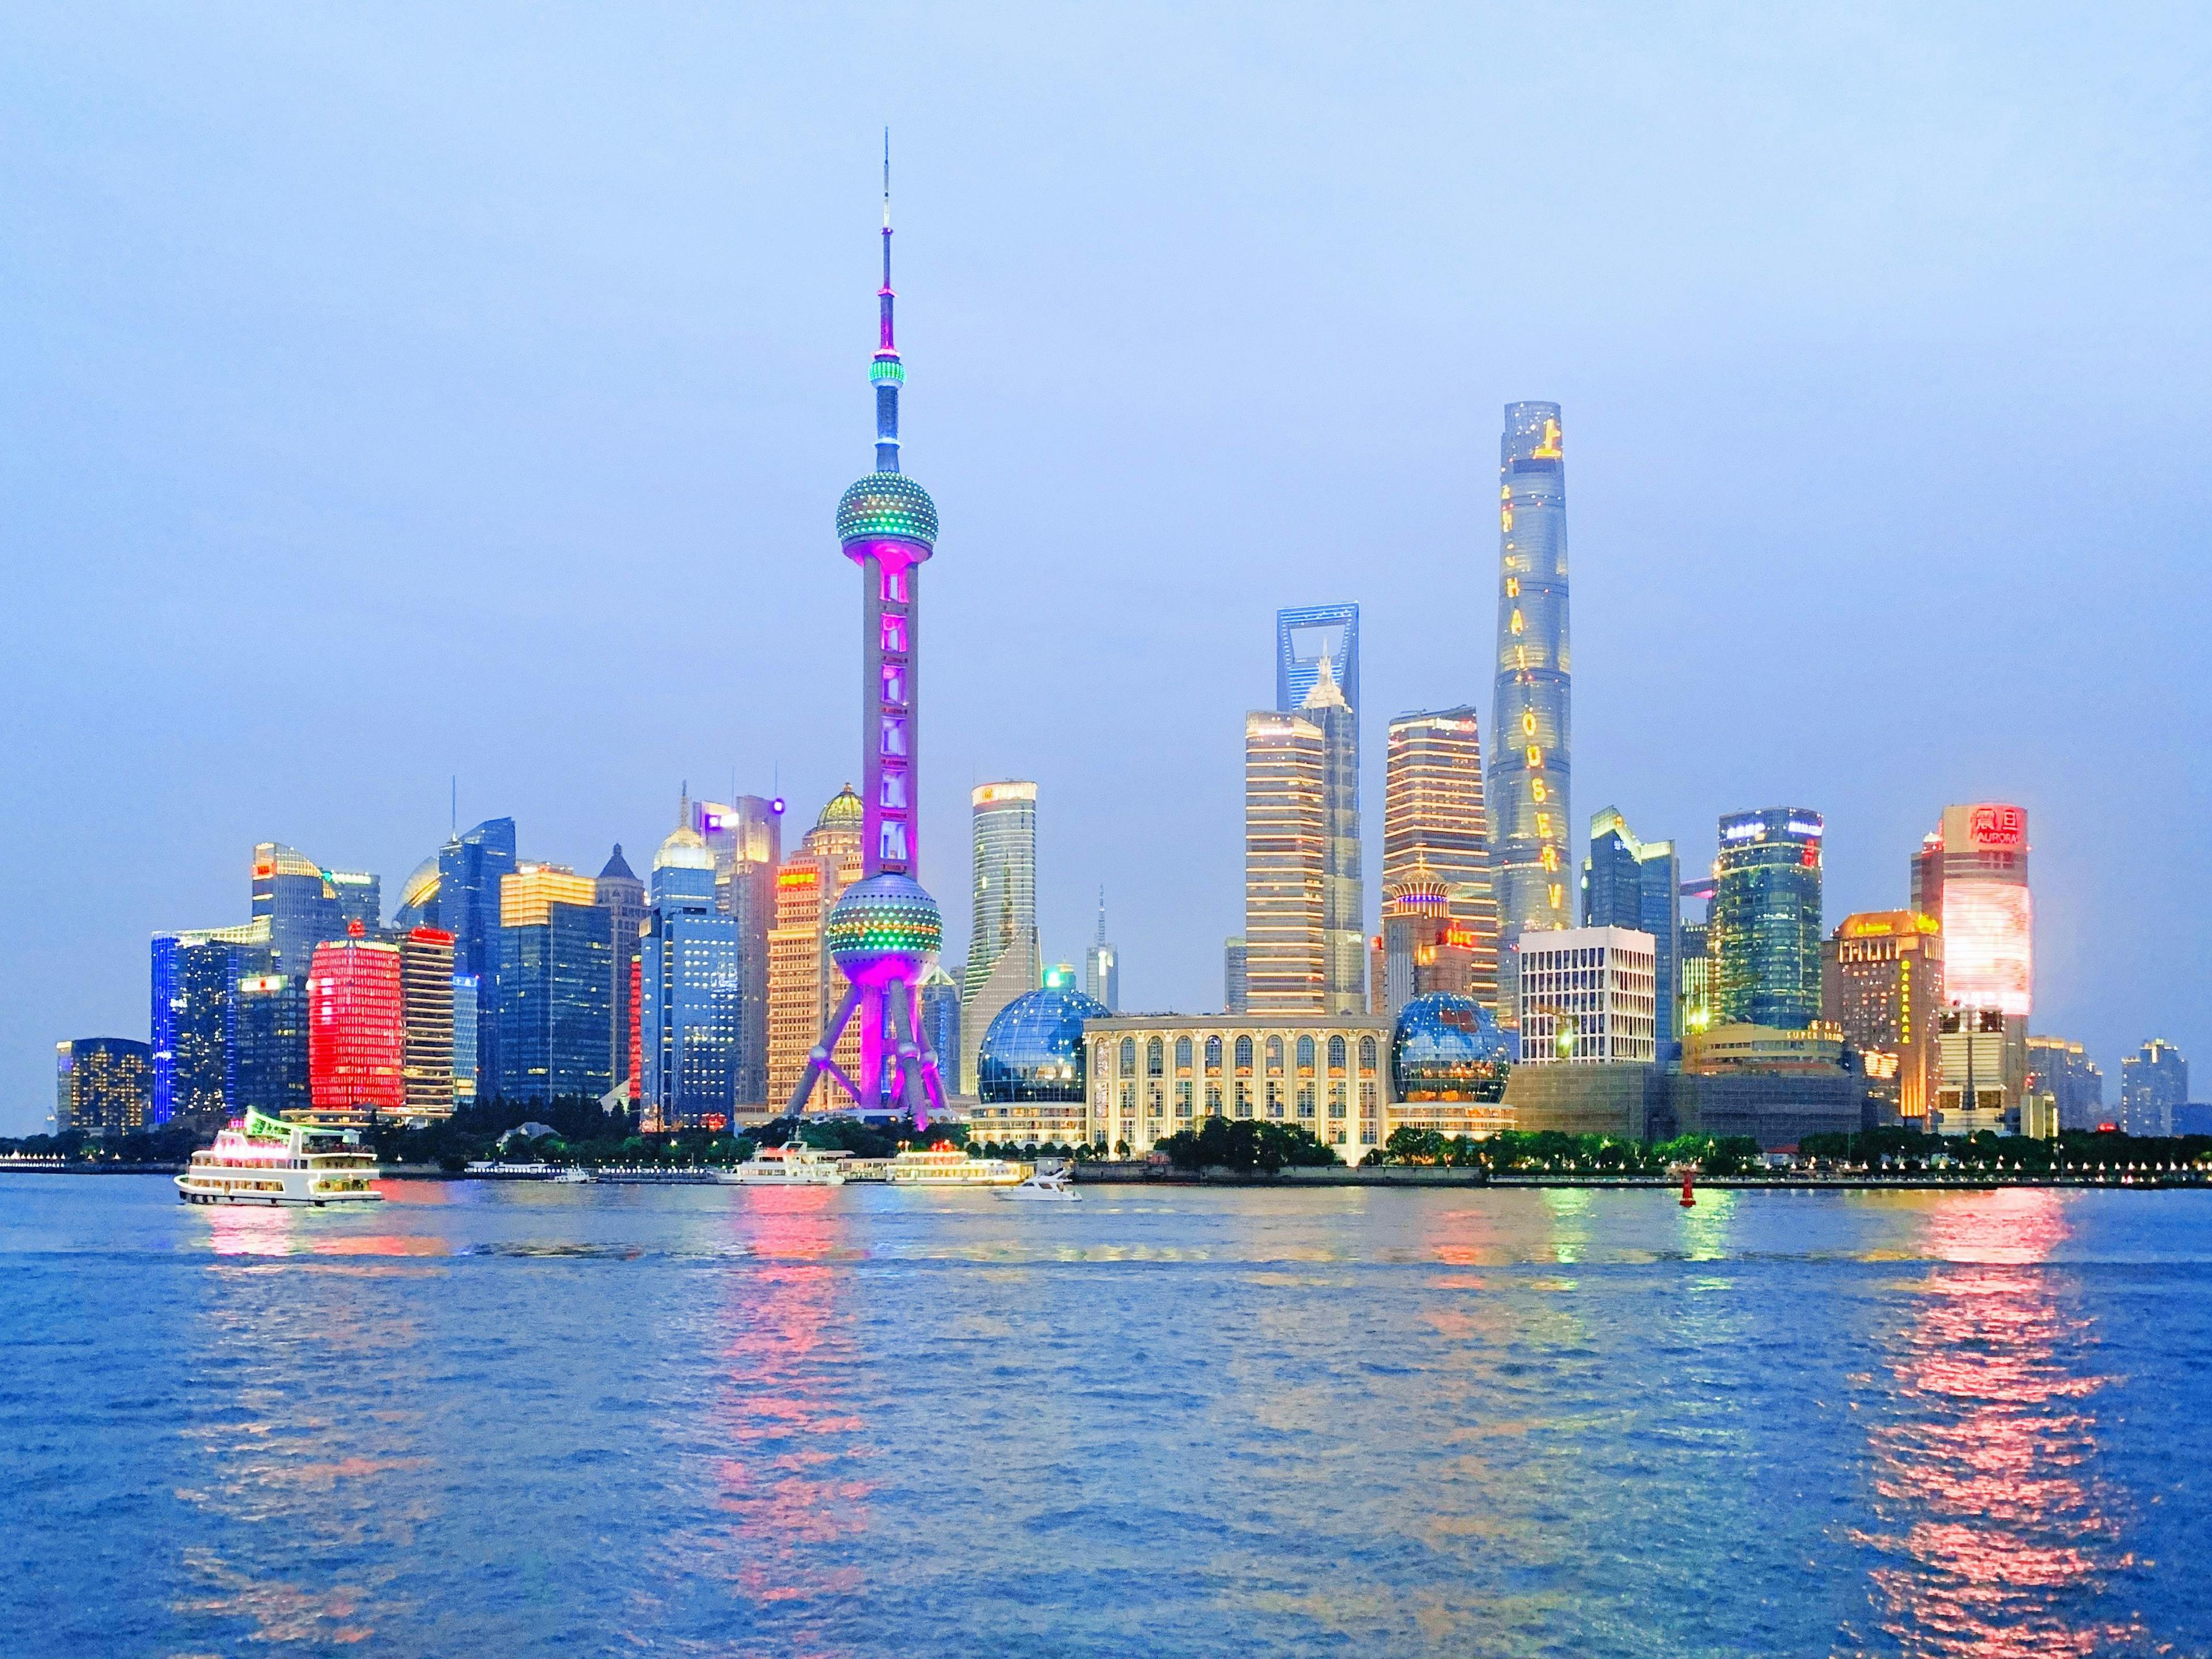 The Bund Shanghai skyline in China